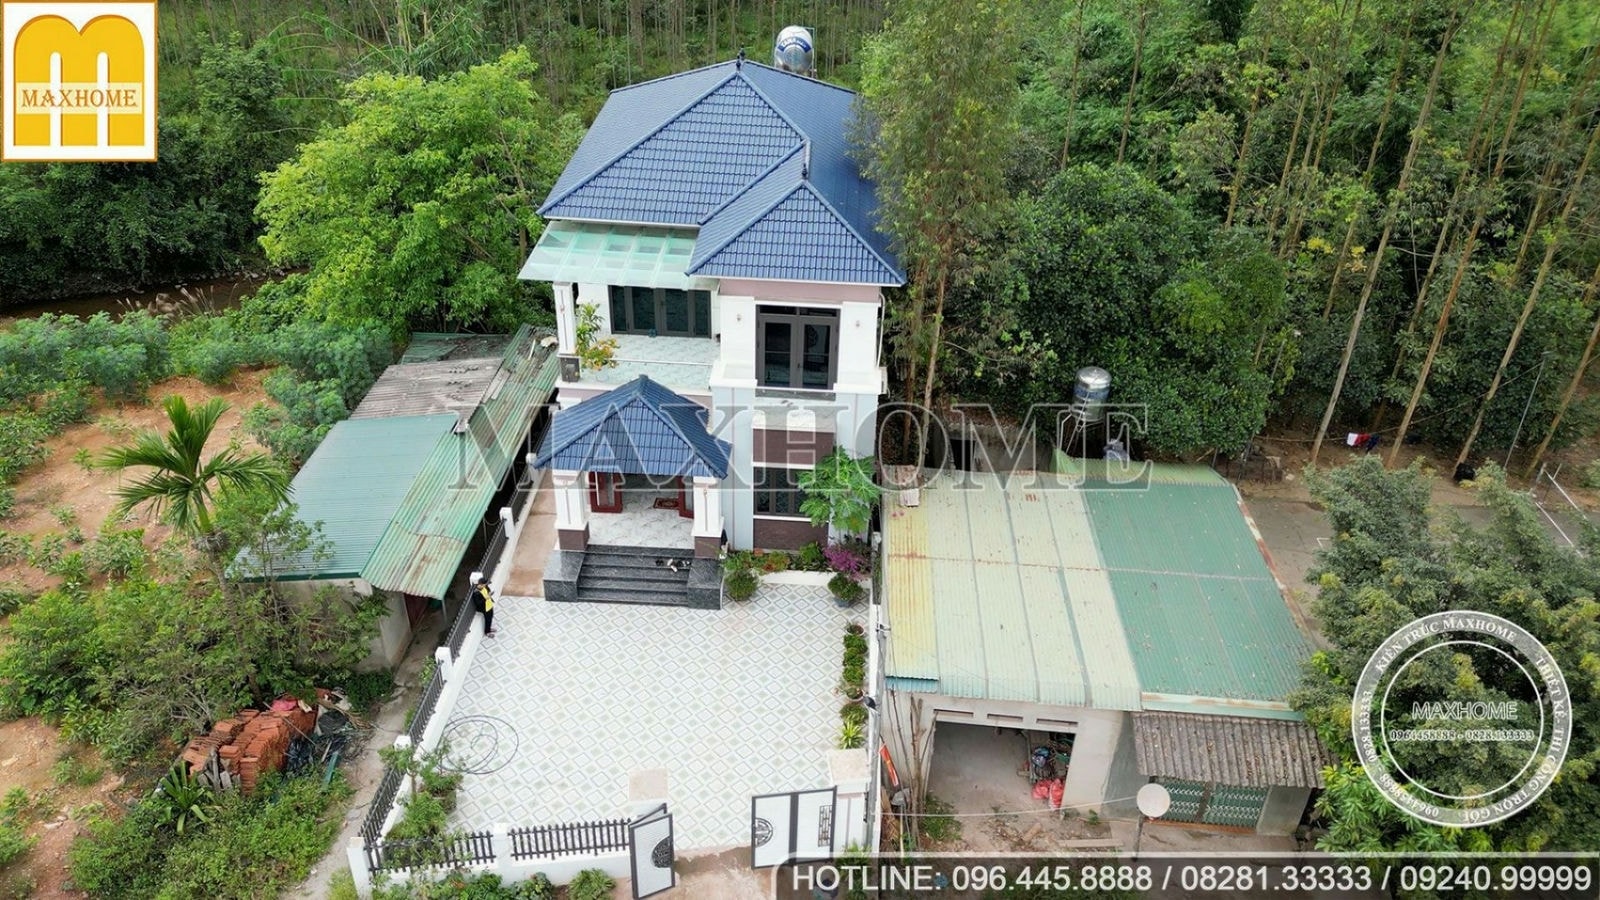 Maxhome thi công trọn gói nhà mái Nhật quá đẹp lại rẻ tại Bắc Giang